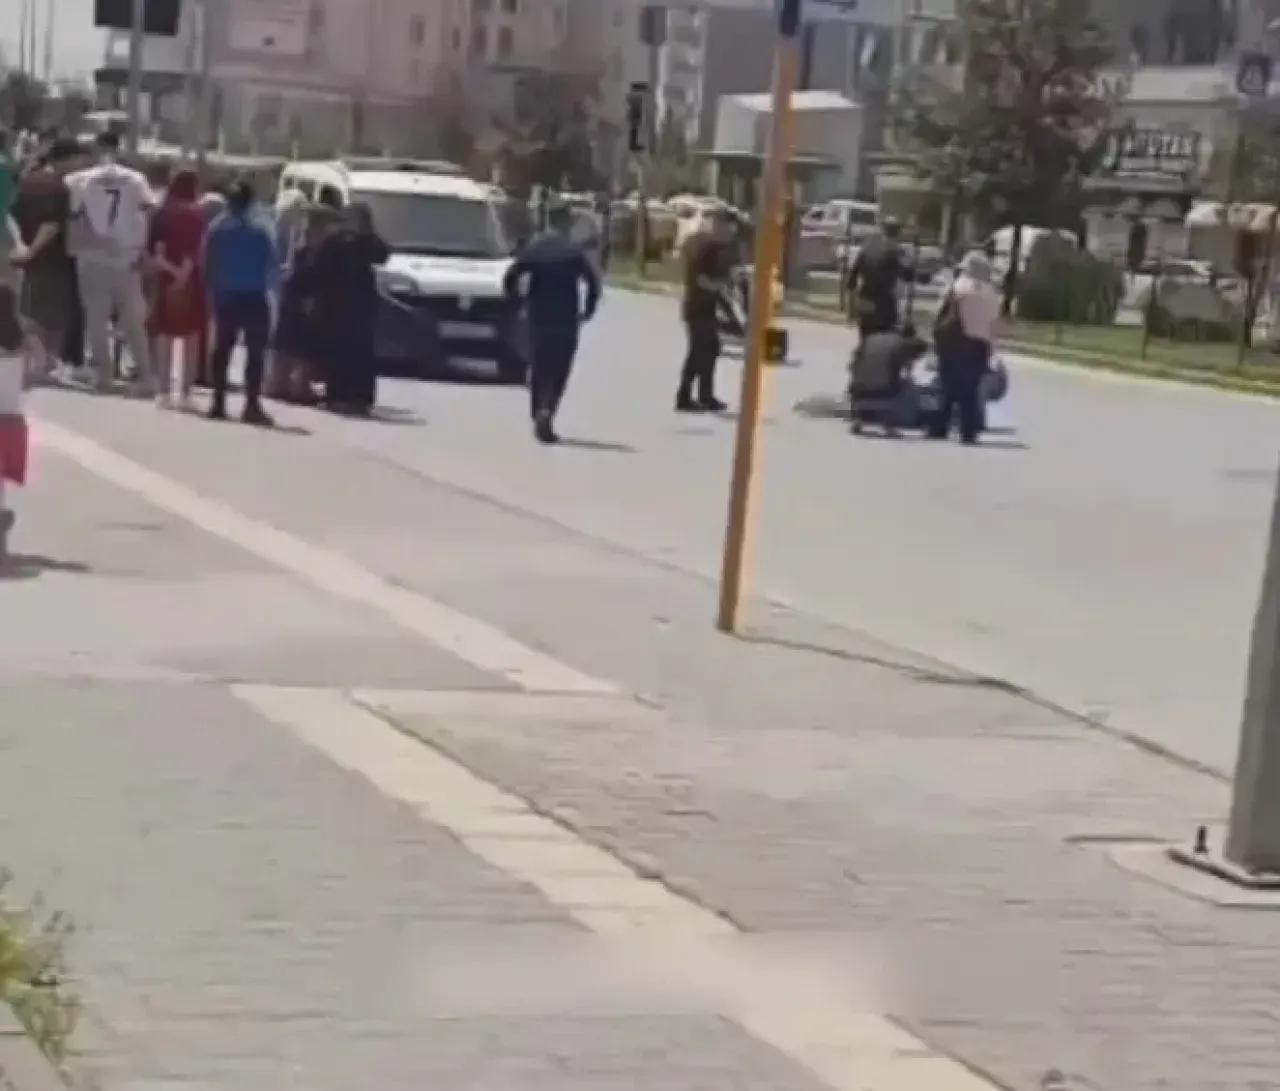 Gaziantep'te polis aracından atlayan şahıs öldü